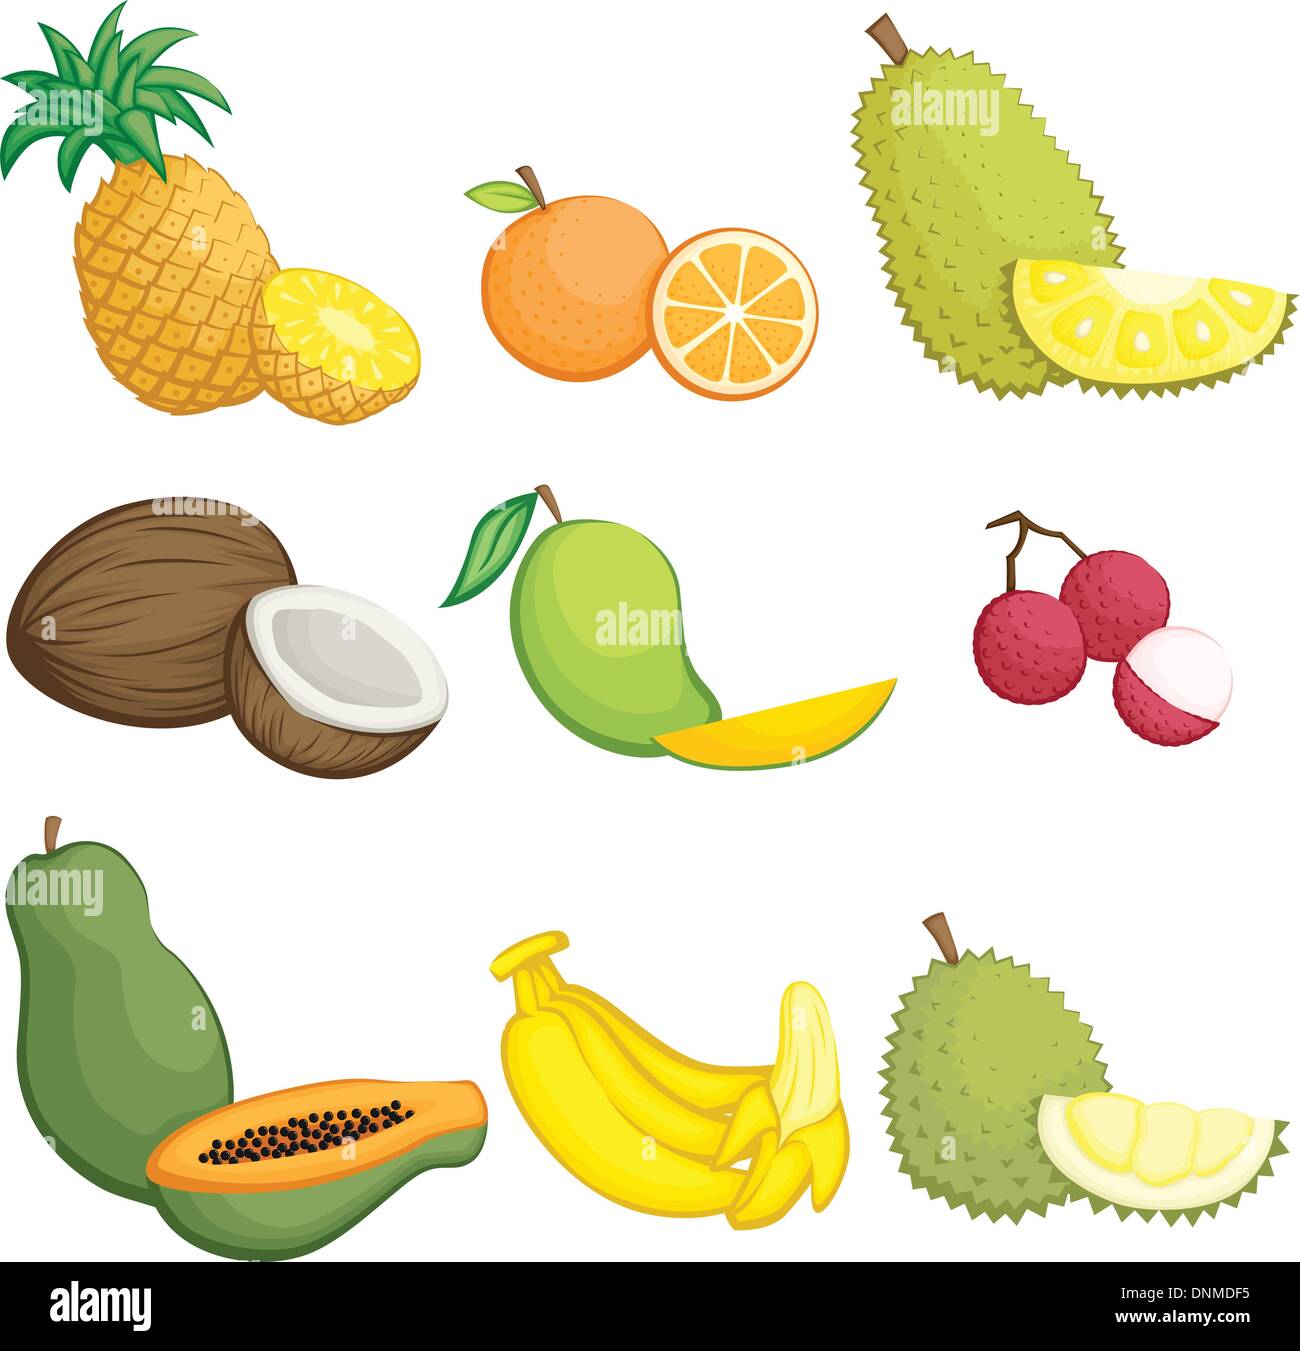 Un vecteur illustration de fruits tropicaux icons Illustration de Vecteur